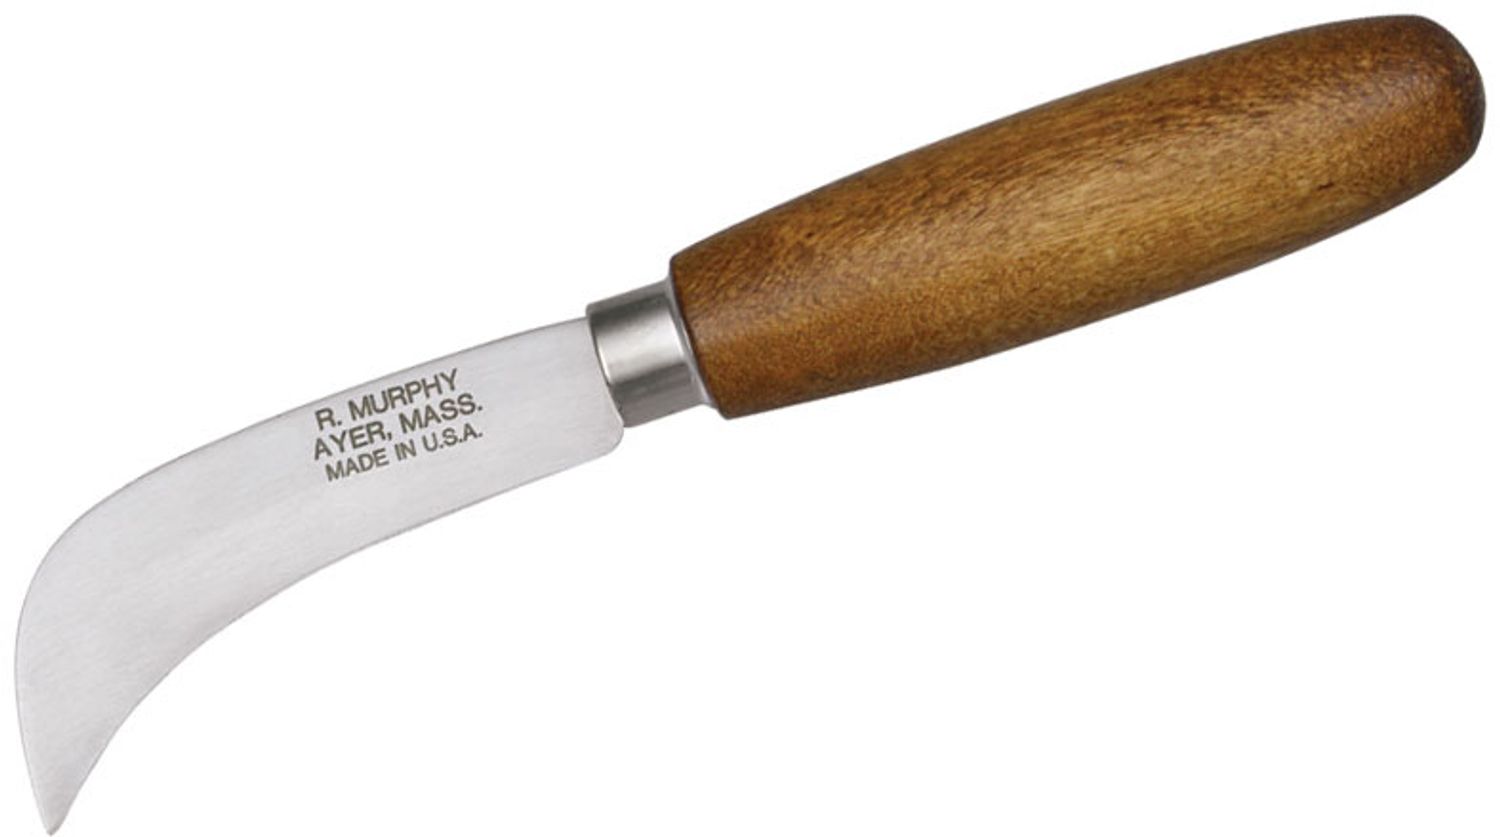 R. Murphy by Dexter-Russell Hawkbill Carpet Knife 3 Carbon Blade, Round  Hardwood Handle - KnifeCenter - 86788